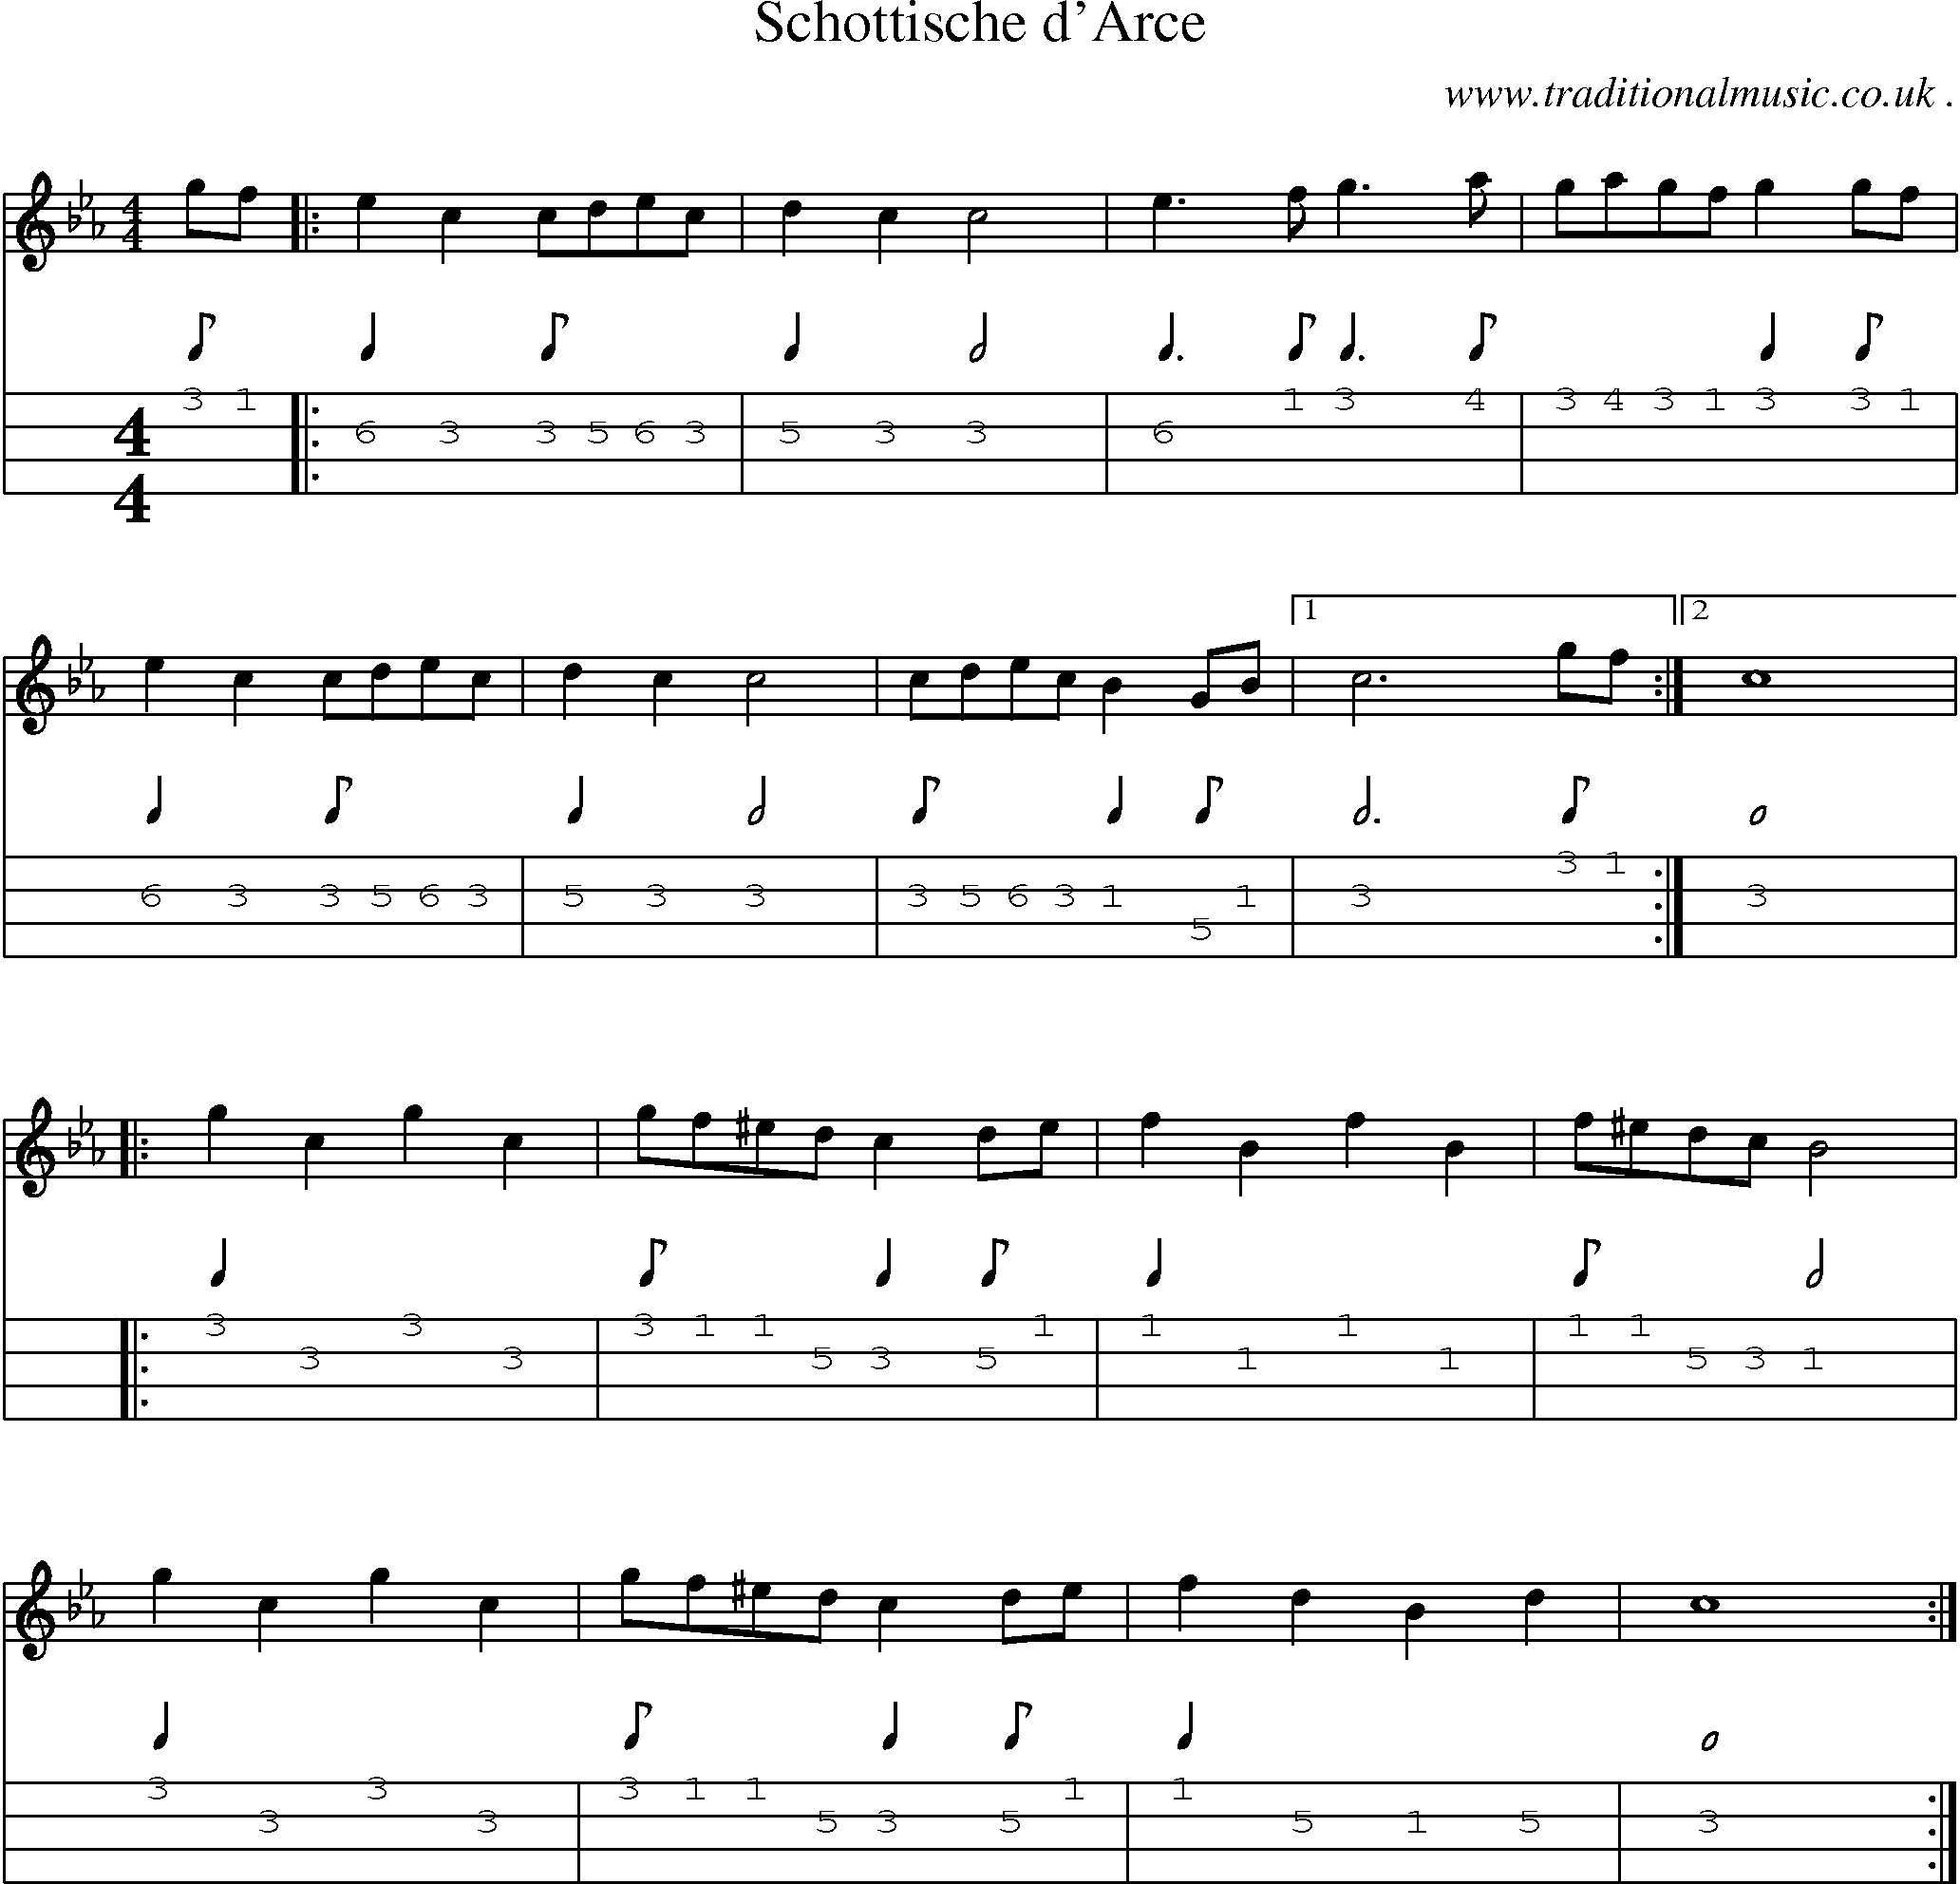 Sheet-Music and Mandolin Tabs for Schottische Darce